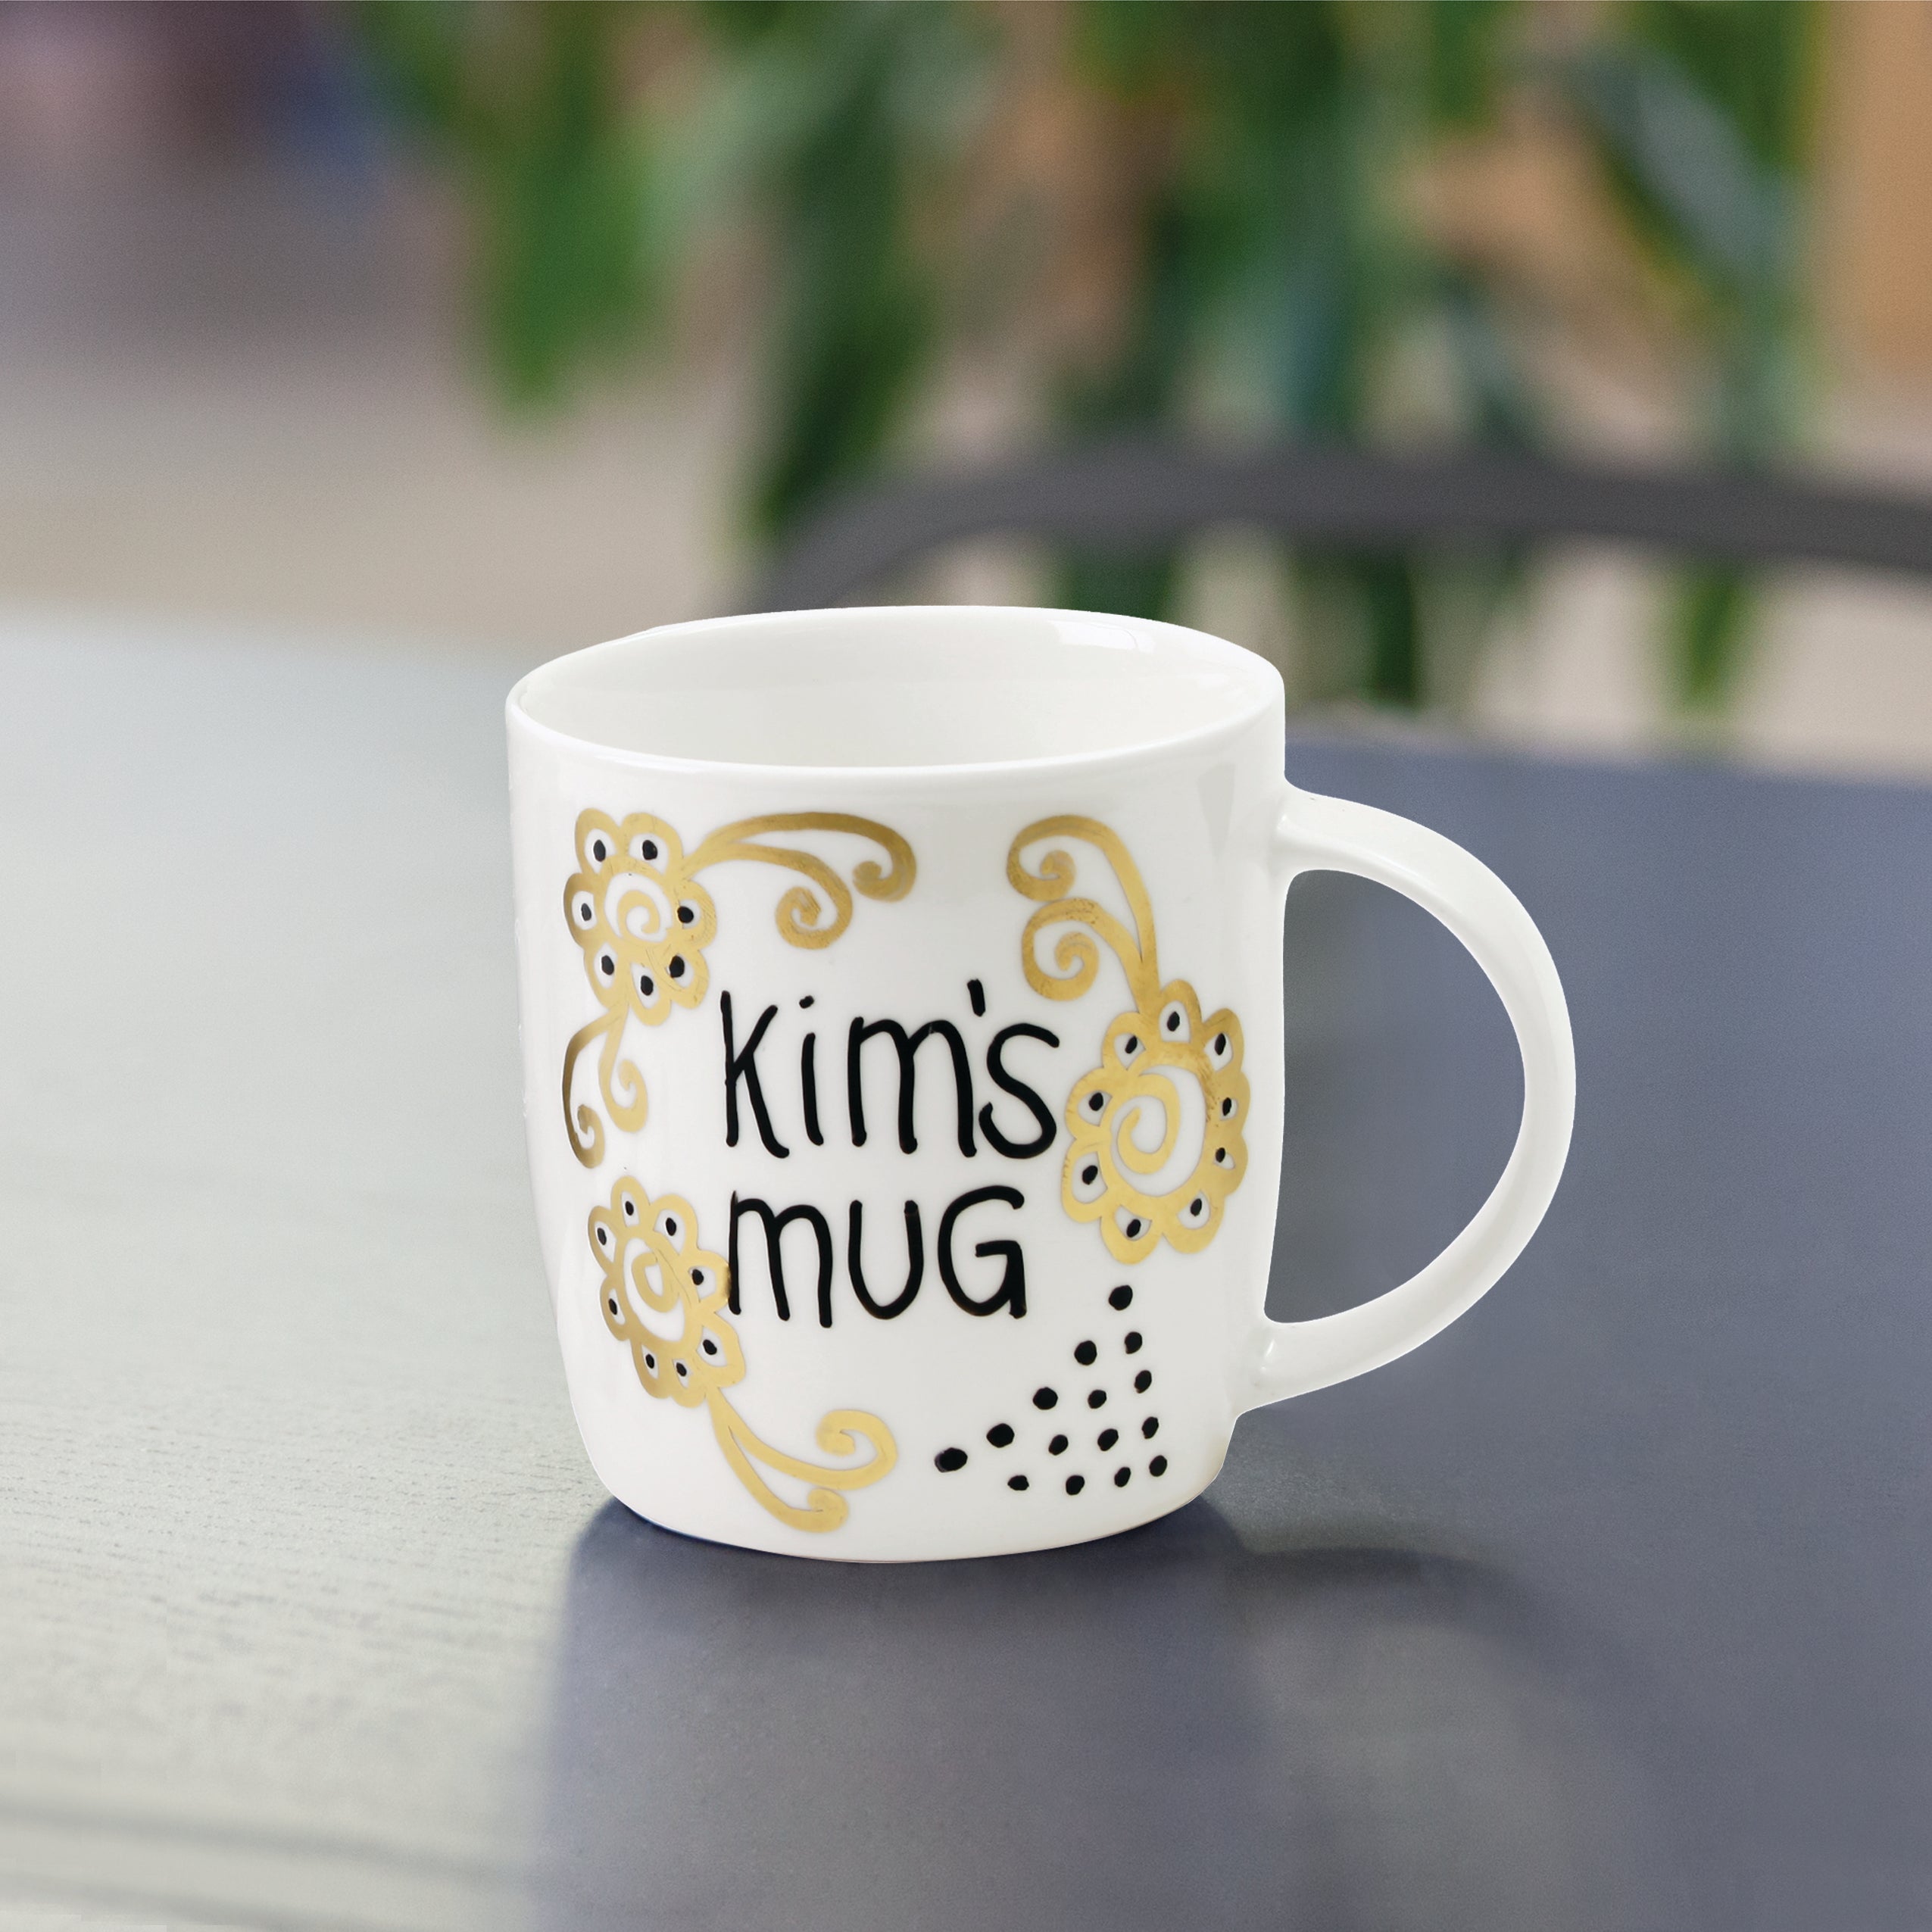 Splosh Design Your Own Mug - SAMPLE MUG